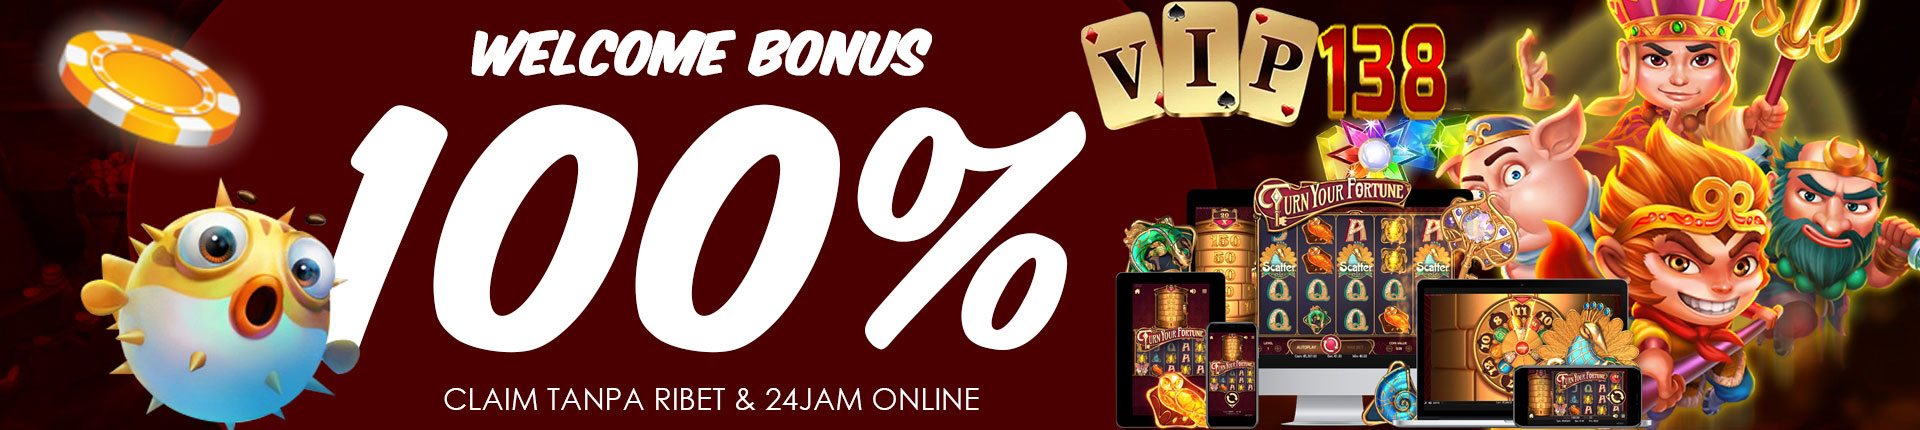 Vip138 Slot Bonus 100%